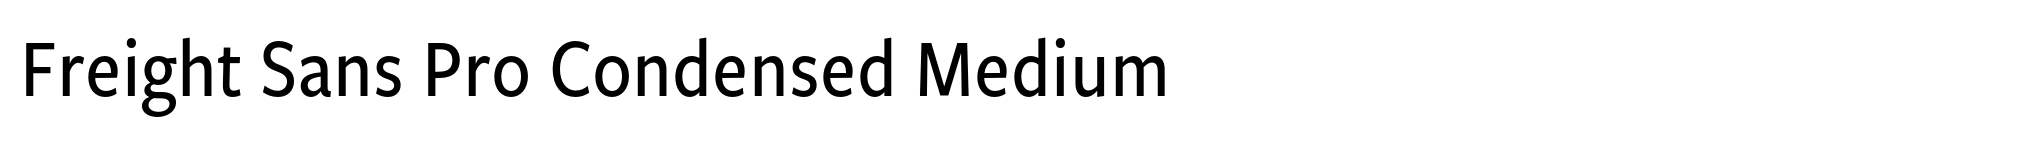 Freight Sans Pro Condensed Medium image